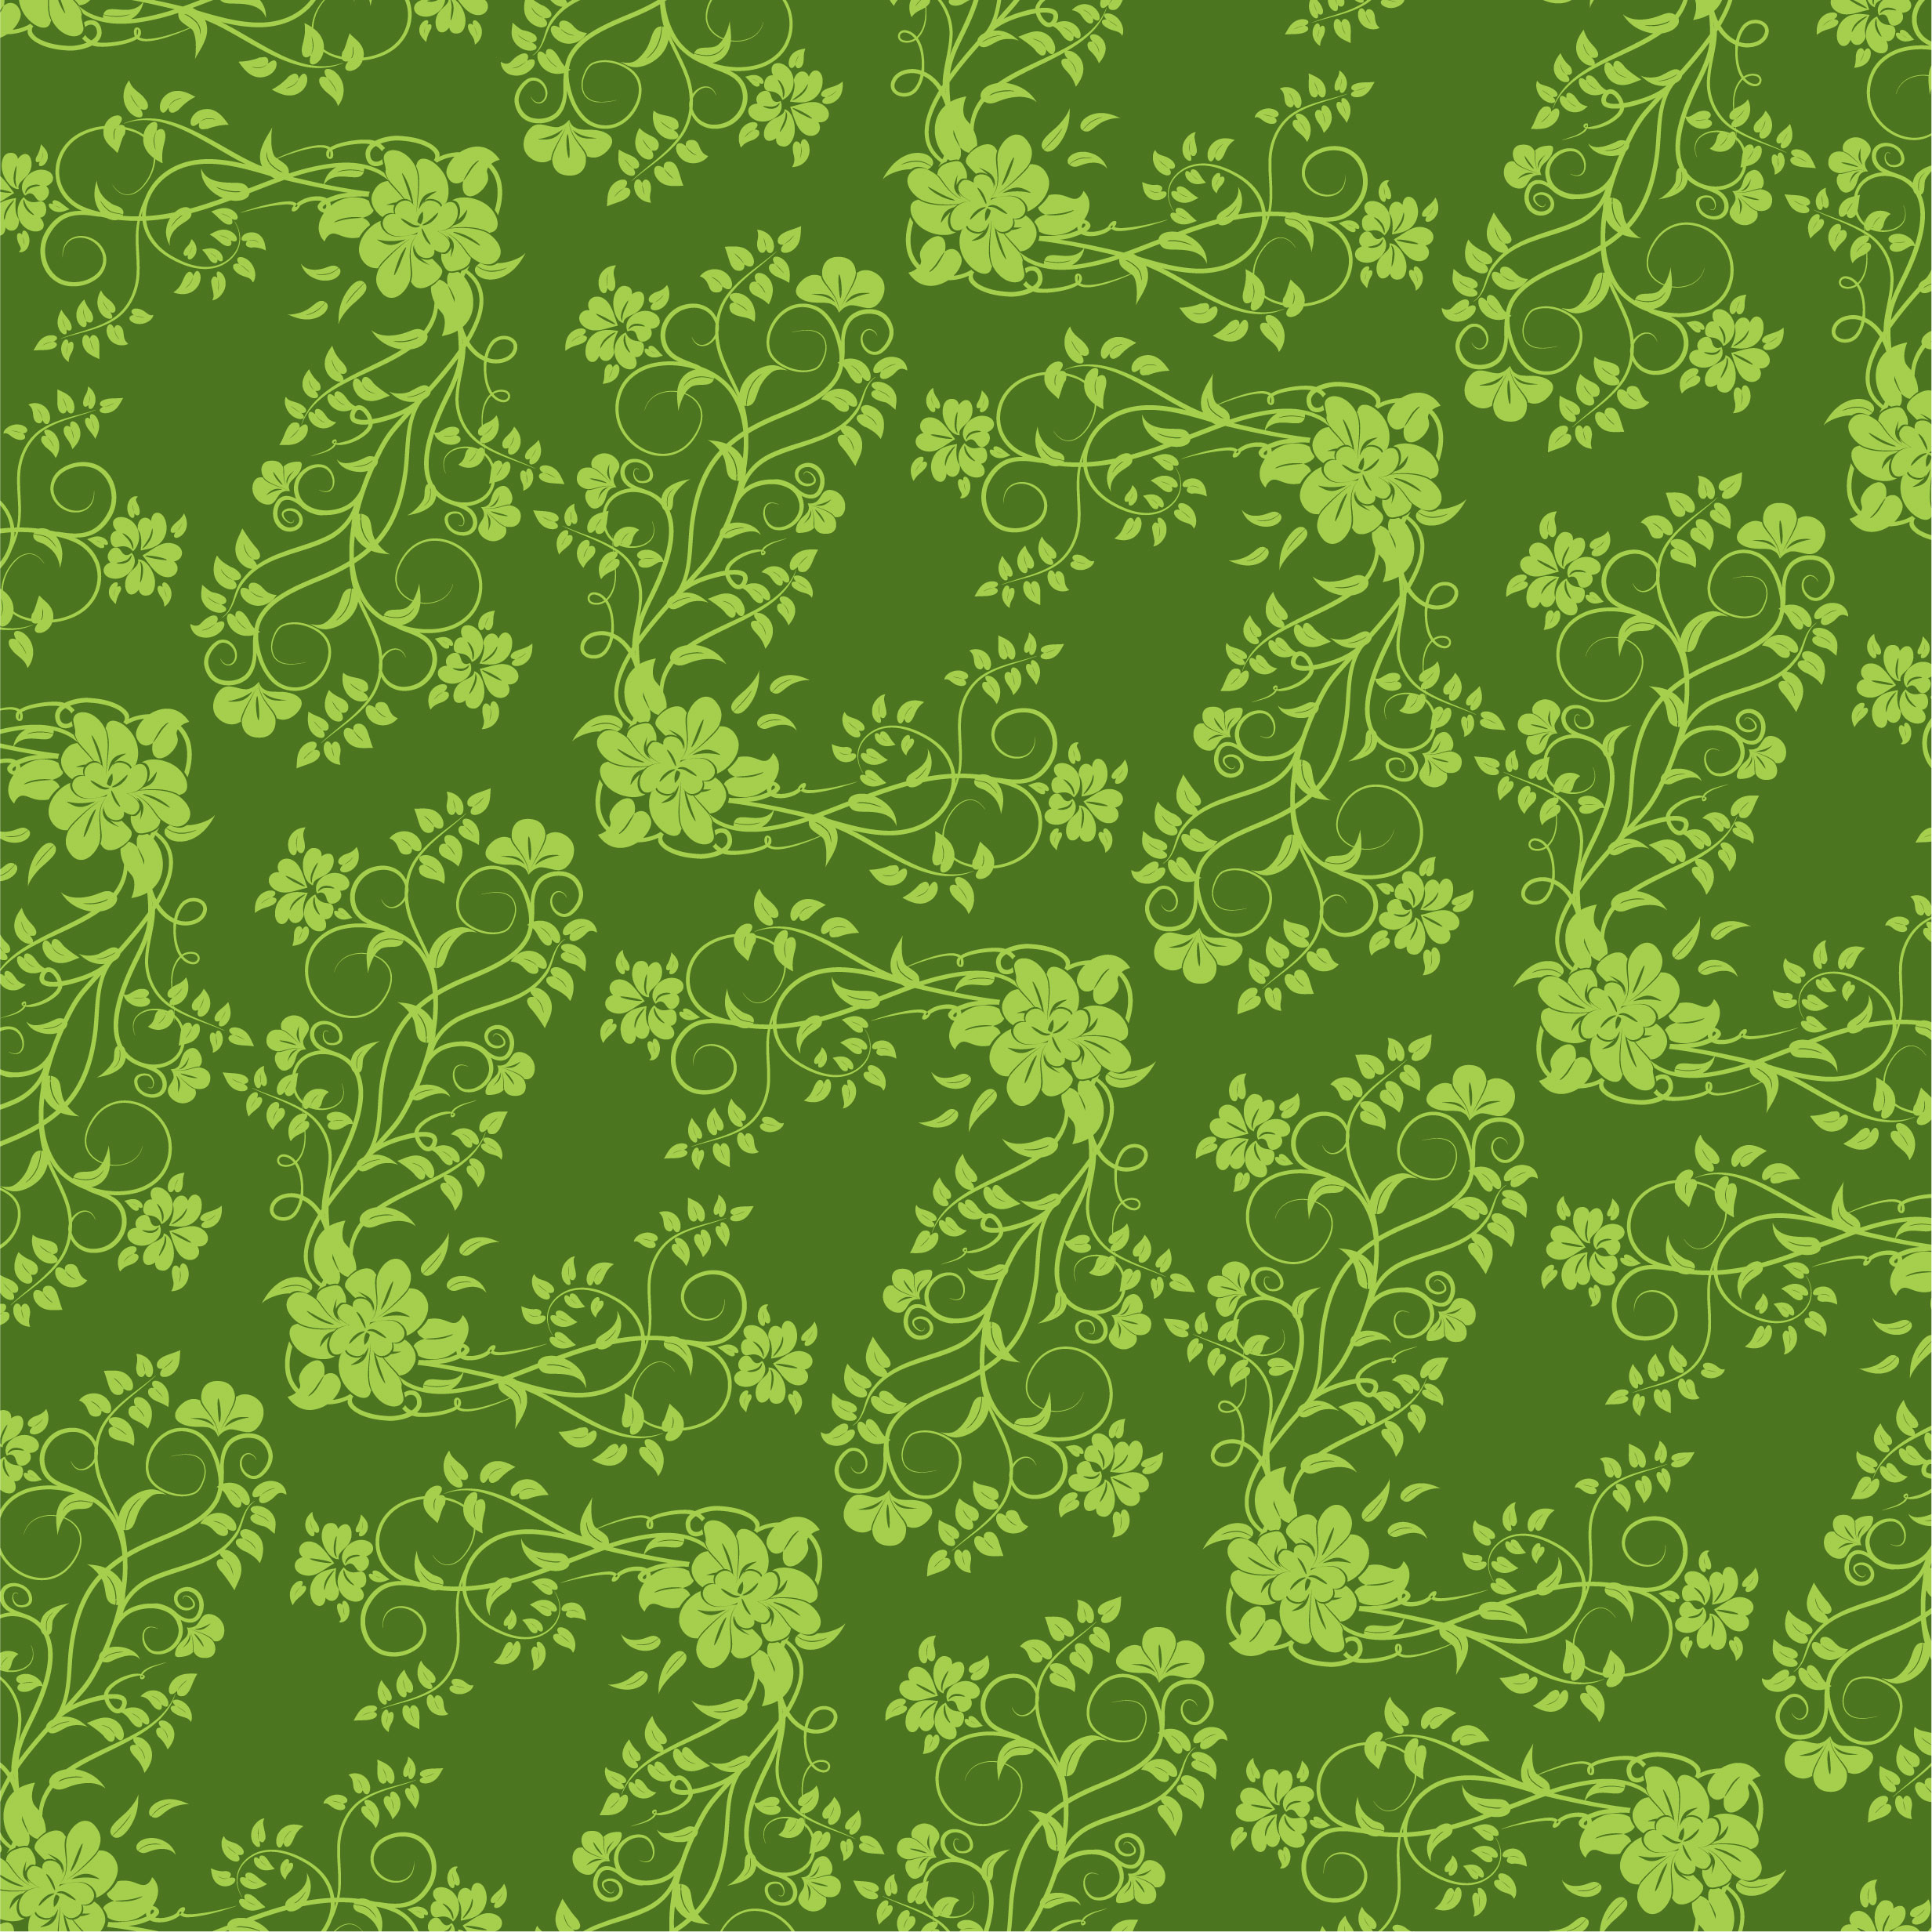 壁紙 背景イラスト 花の模様 柄 パターン No 288 緑 茎葉